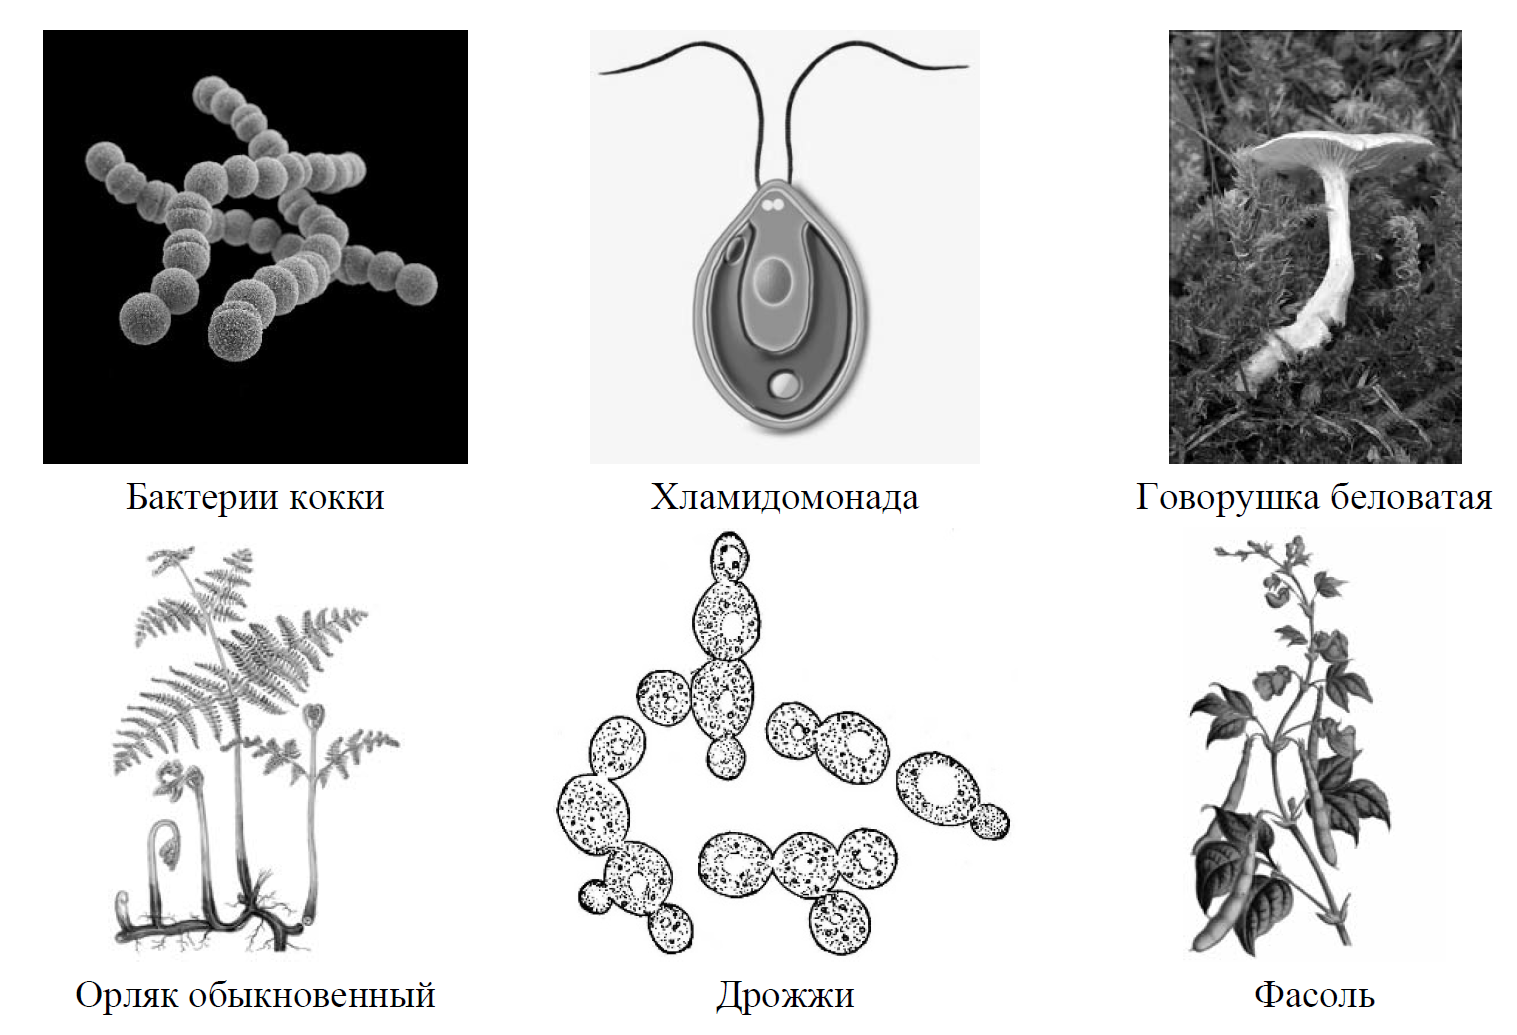 Рассмотрите изображение шести организмов впр. Рассмотрите изображение шести организмов. Сумчатые грибы ВПР. Рассмотрите изображение шести организмов предложите. Бактерии грибы животные ВПР.